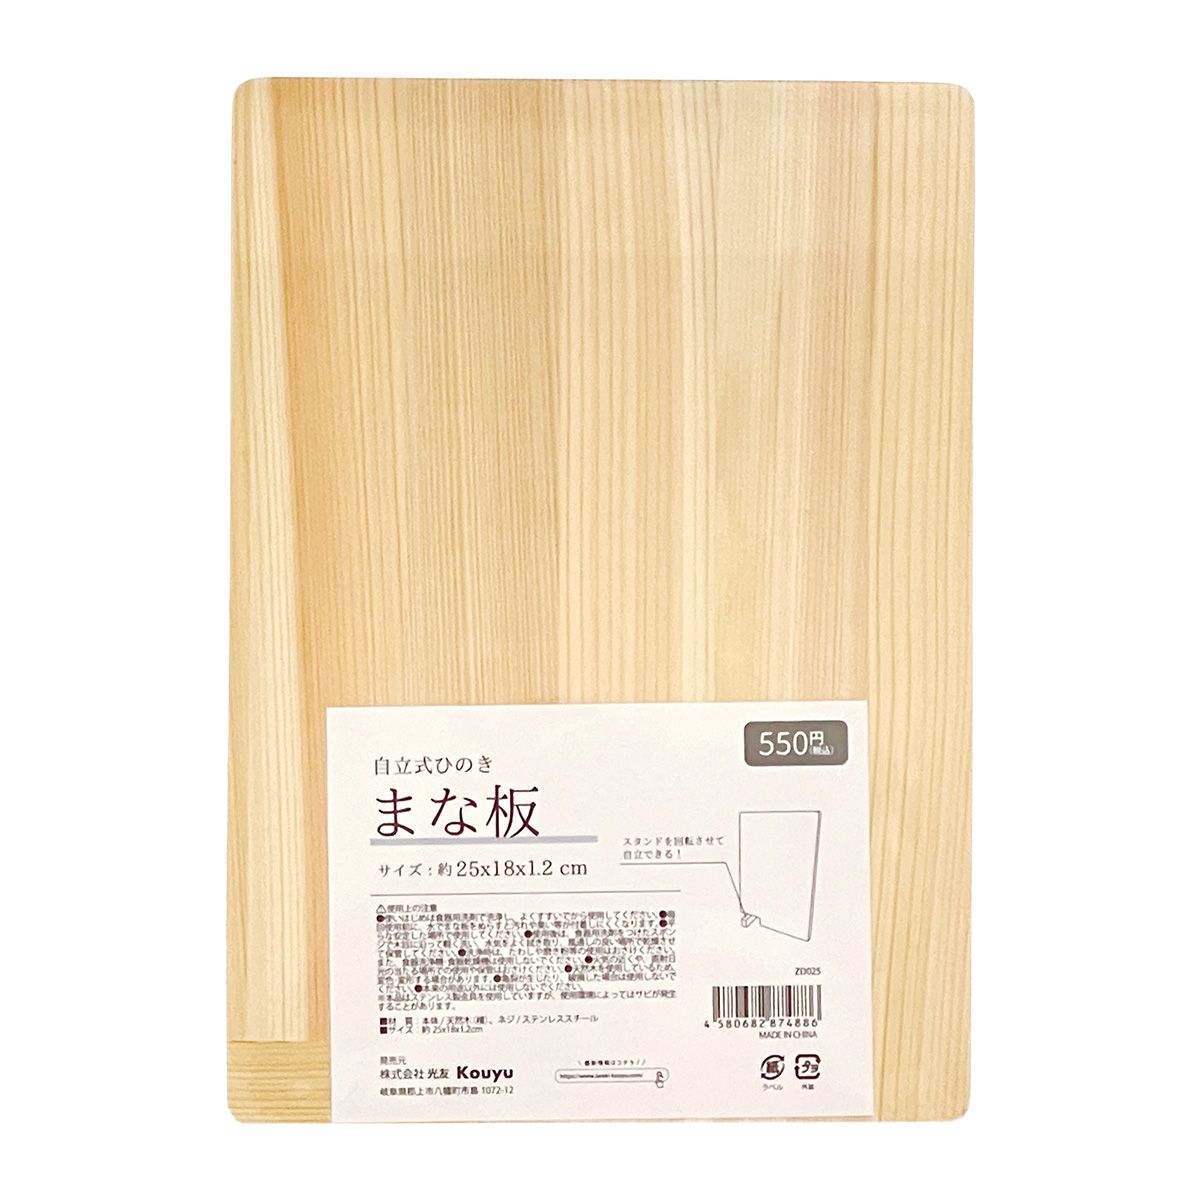 俎板 ヒノキ 天然木製 自立式まな板 約25x18x1.2cm 349183